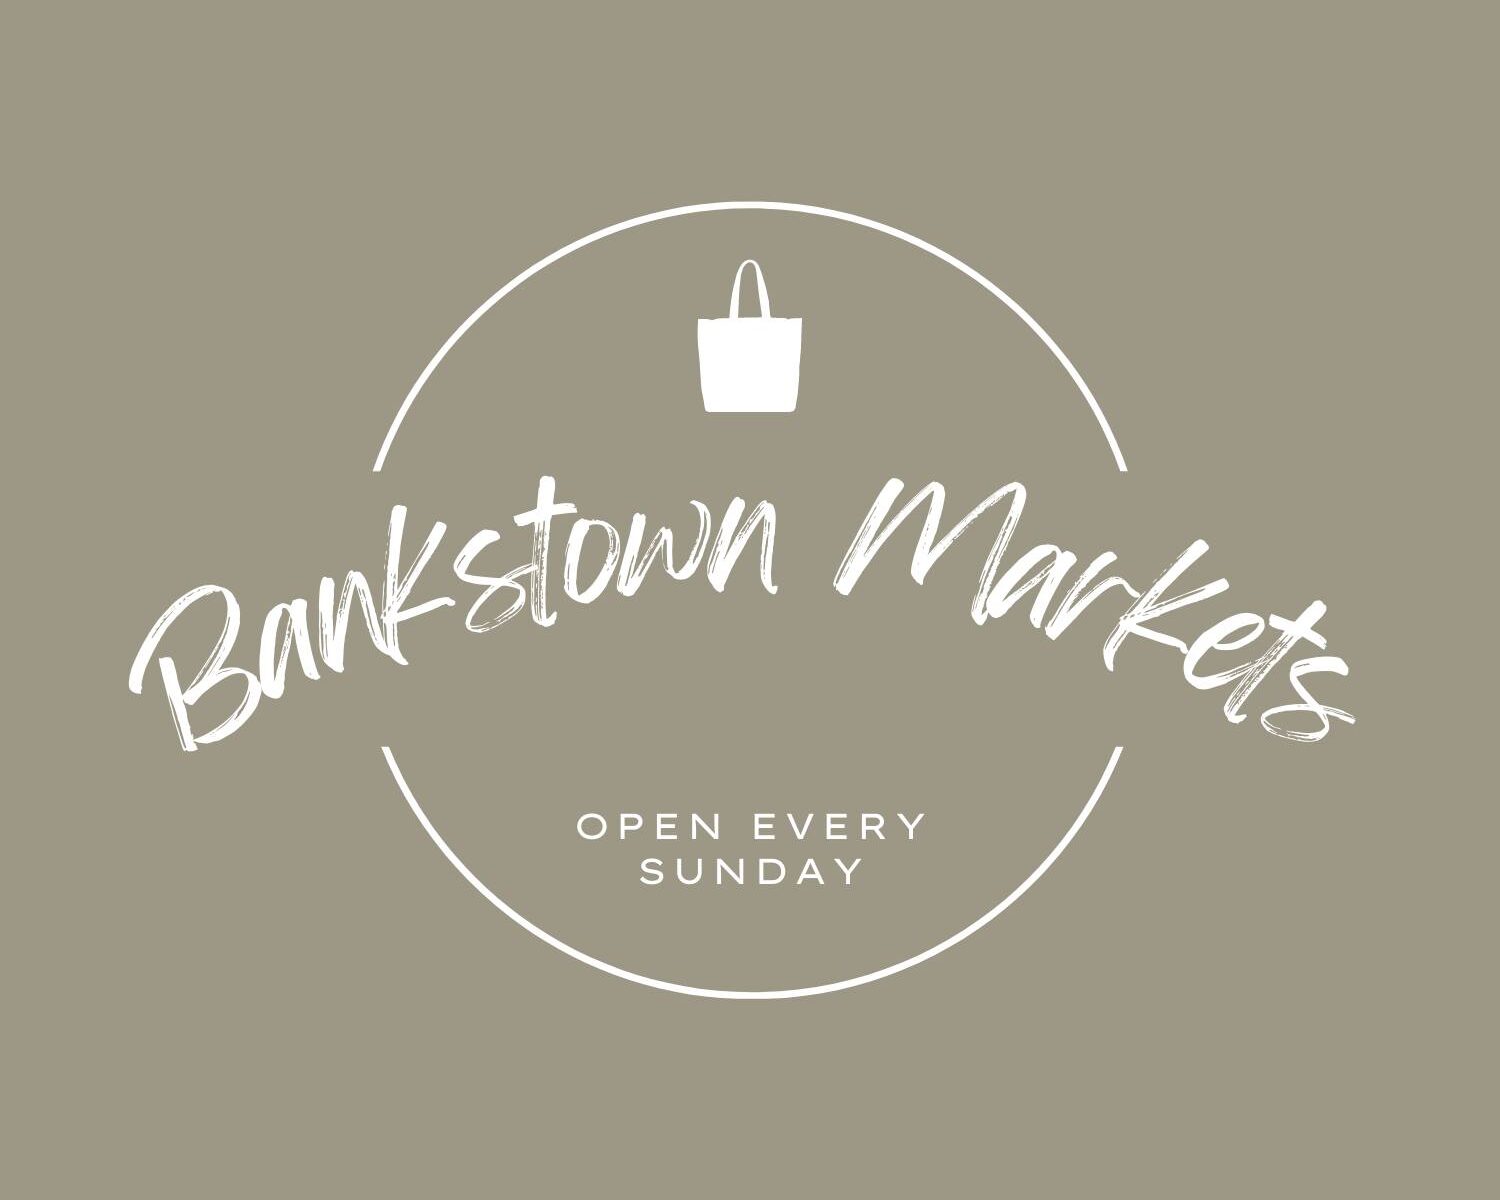 Bankstown Markets